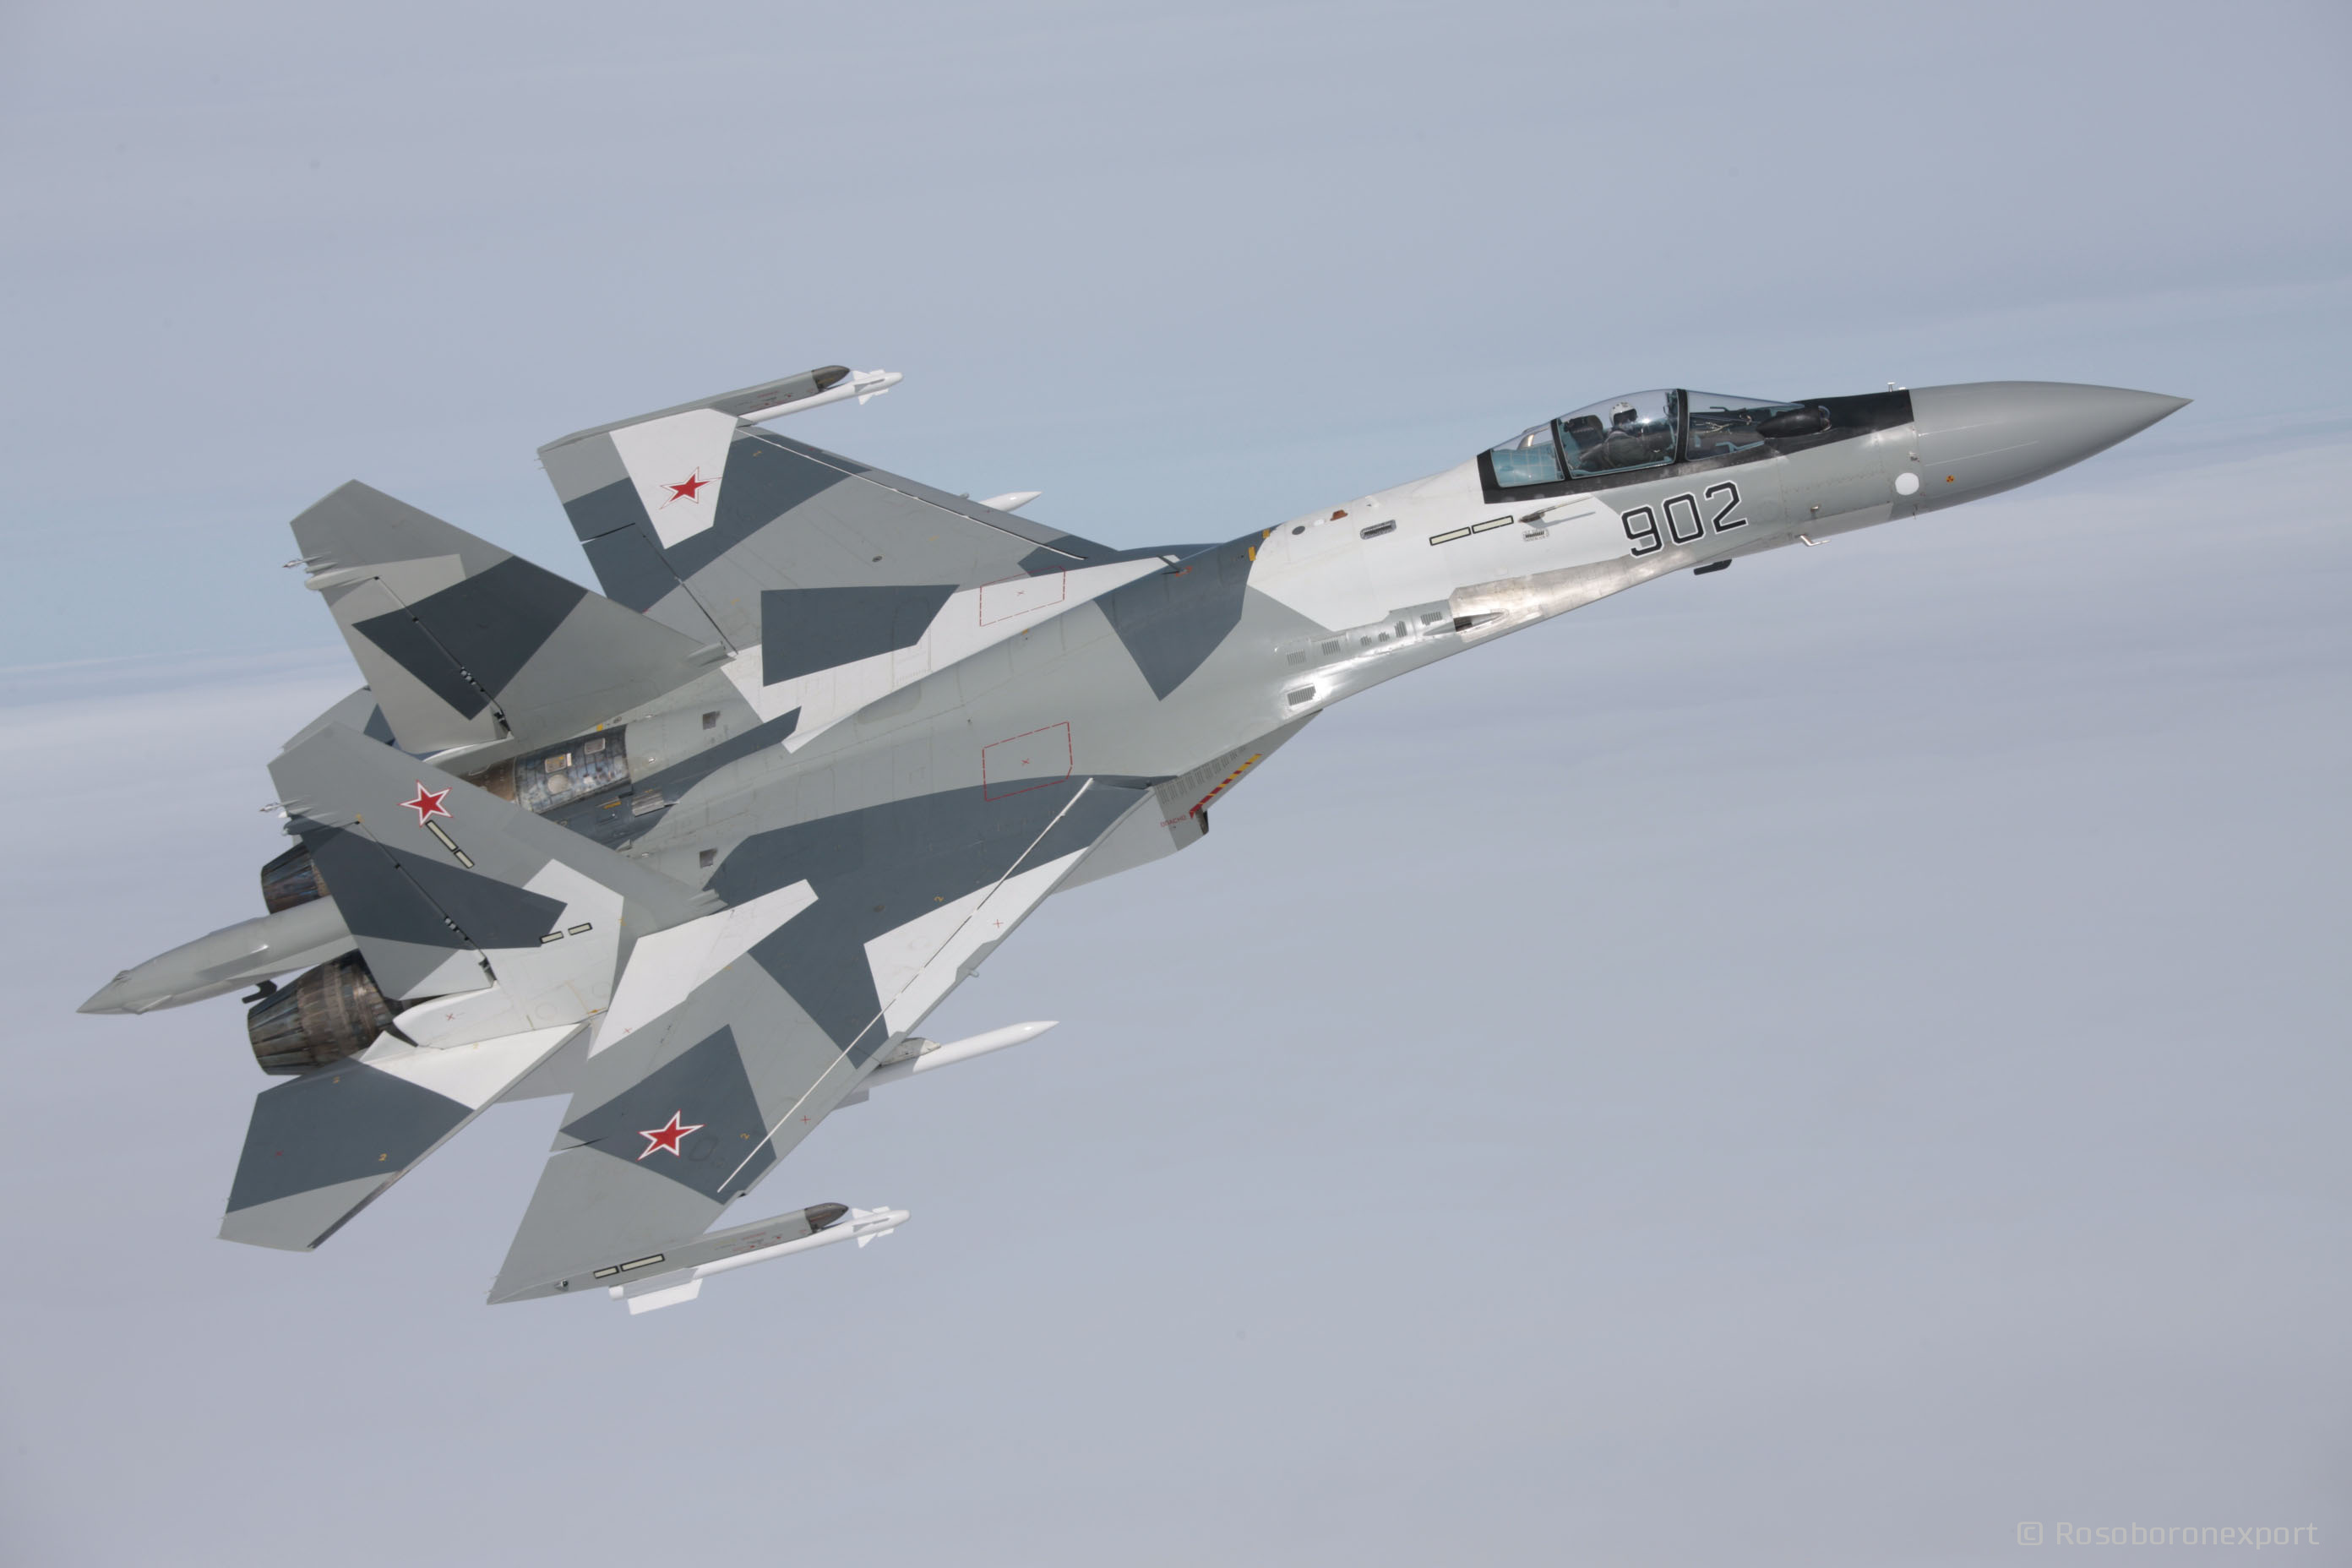 Про експорт винищувачів п'ятого покоління Су-57 і Су-75 росія може забути на 10 років через санкції-3